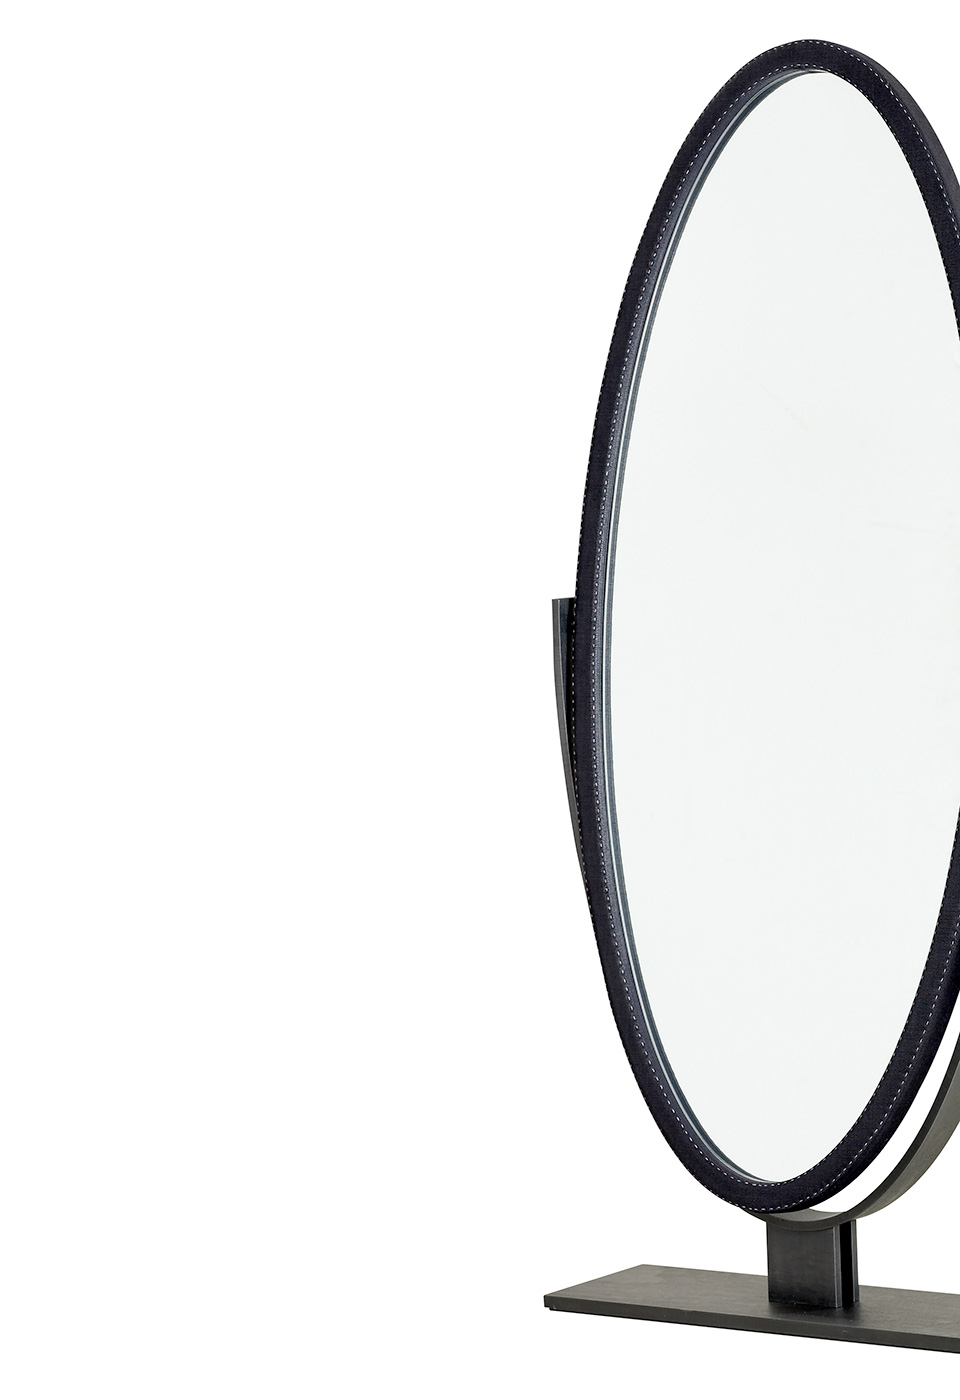 Ingrid est un miroir elliptique basculant avec un piètement en métal plaqué bronze. Ce miroir figure dans le catalogue Promemoria | Promemoria 